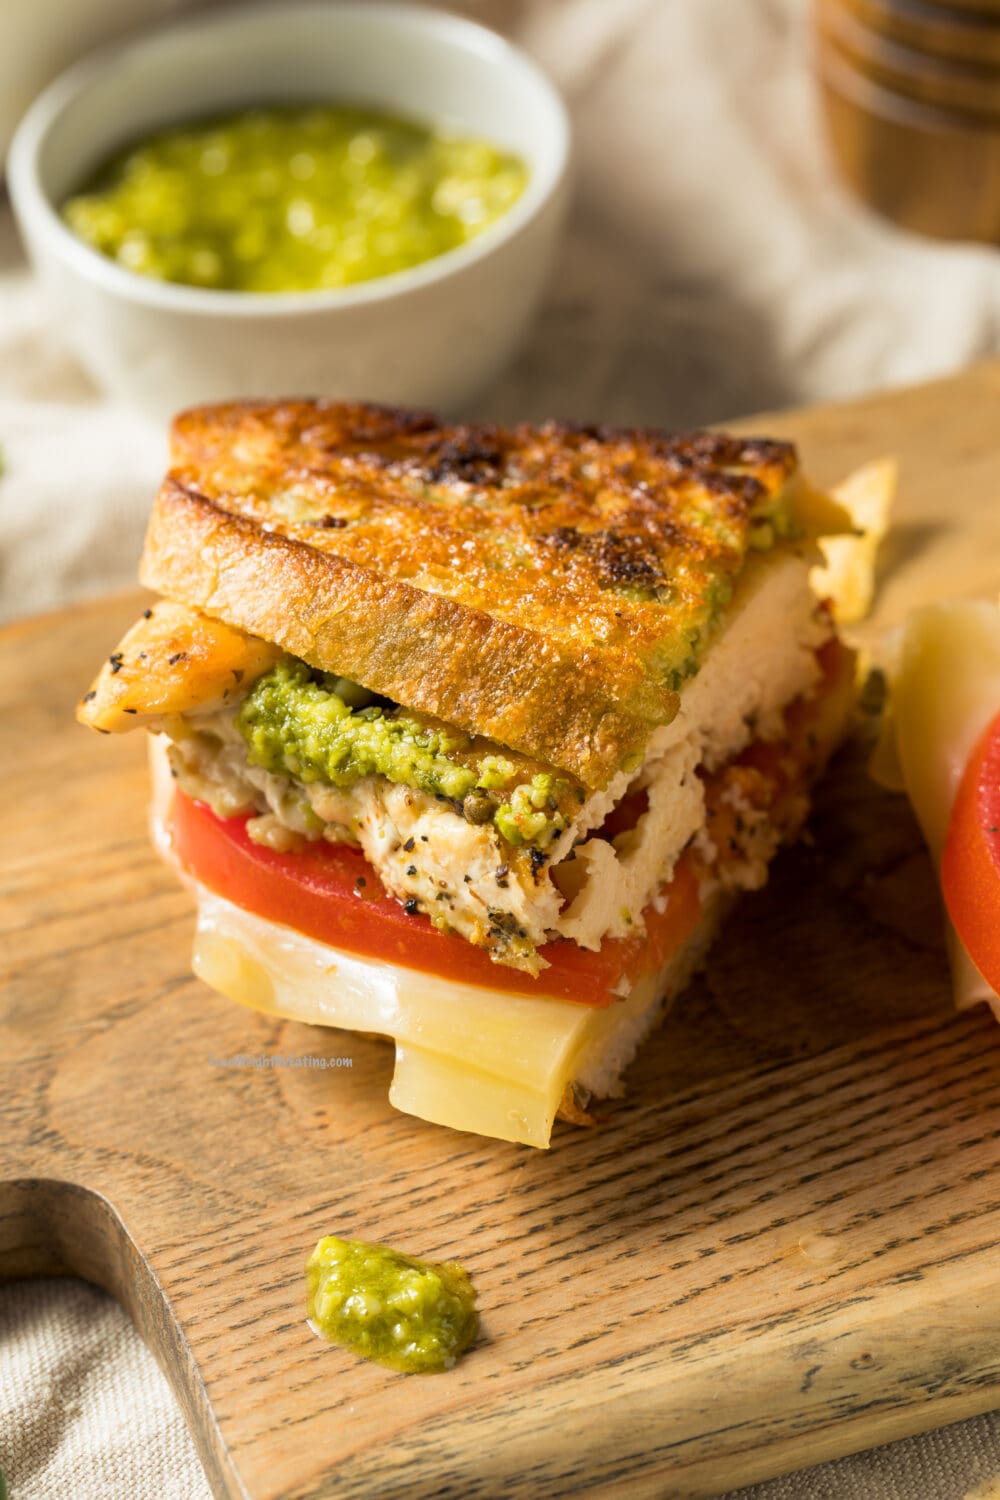 Healthy Pesto Chicken Sandwiches